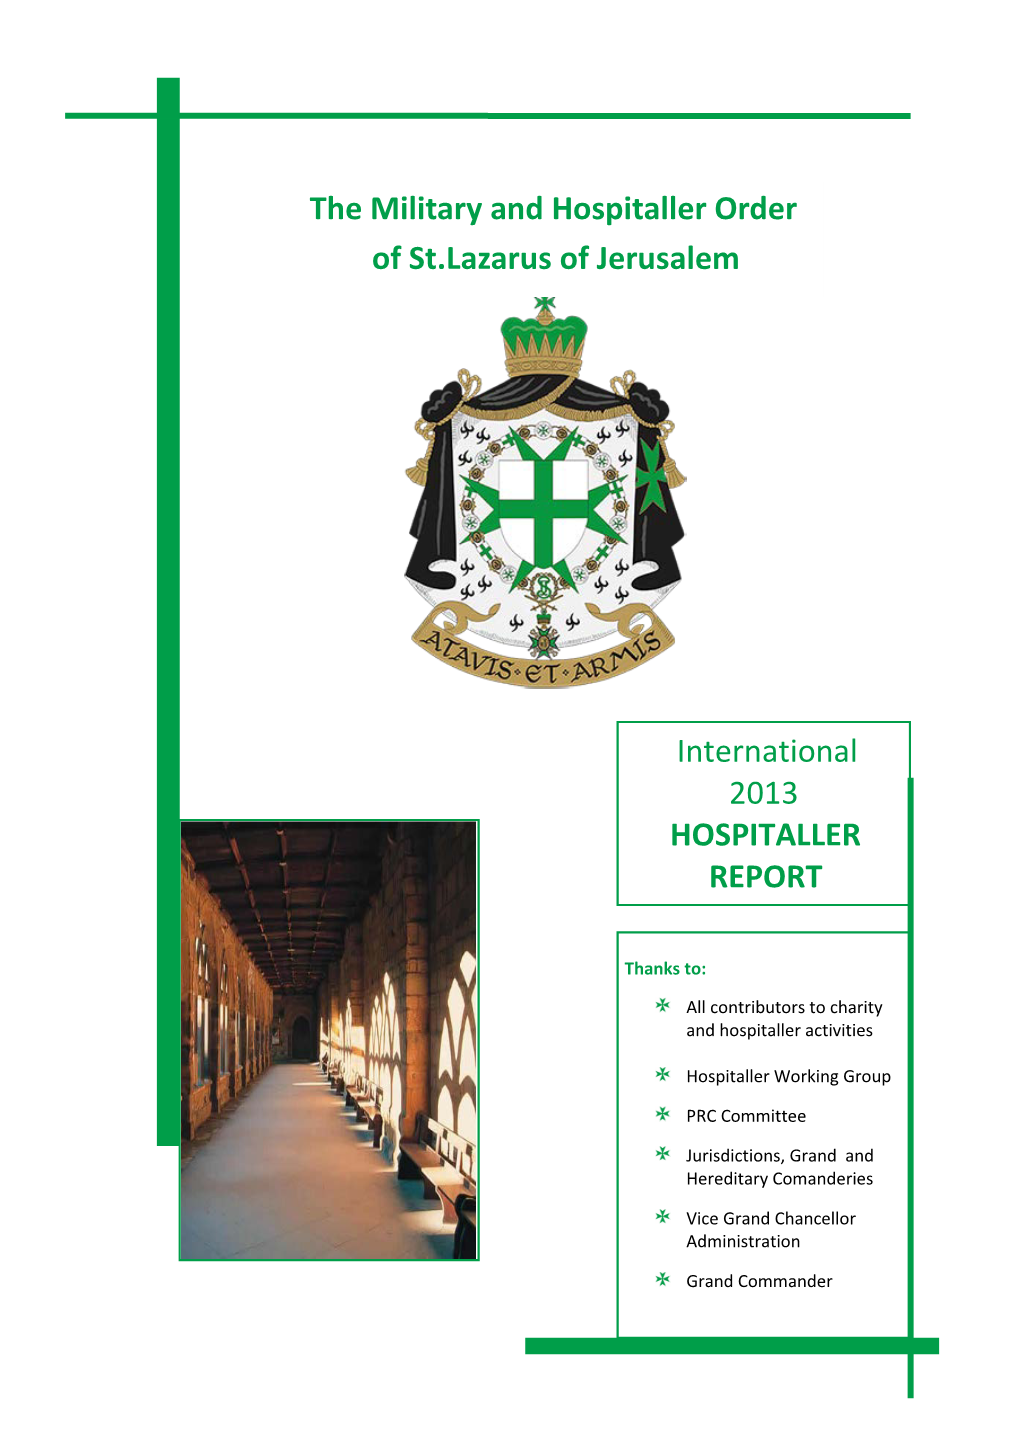 Hospitaller Report 2013